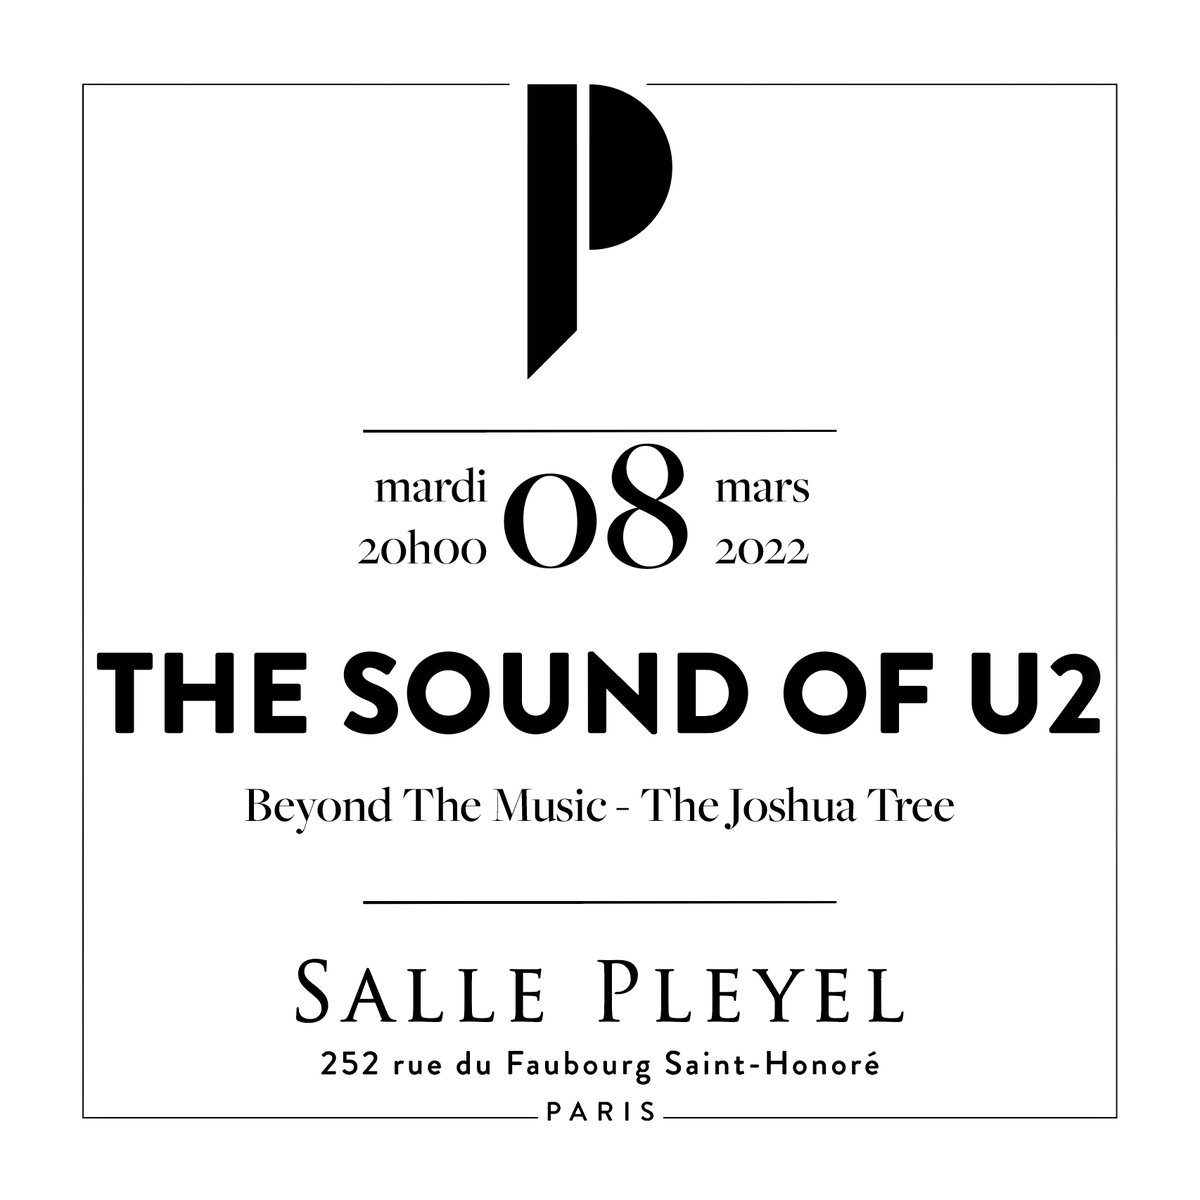 [ MISE EN VENTE ] THE SOUND OF U2 - MARDI 8 MARS 2022 Le chanteur, @NigelConnell , et son groupe rendent hommage à l'album #TheJoshuaTree de U2 accompagnés d’un orchestre à cordes de 12 musiciens et de 10 choristes. 🎫 BILLETTERIE : tinyurl.com/ye2zfrxk #SallePleyel #U2